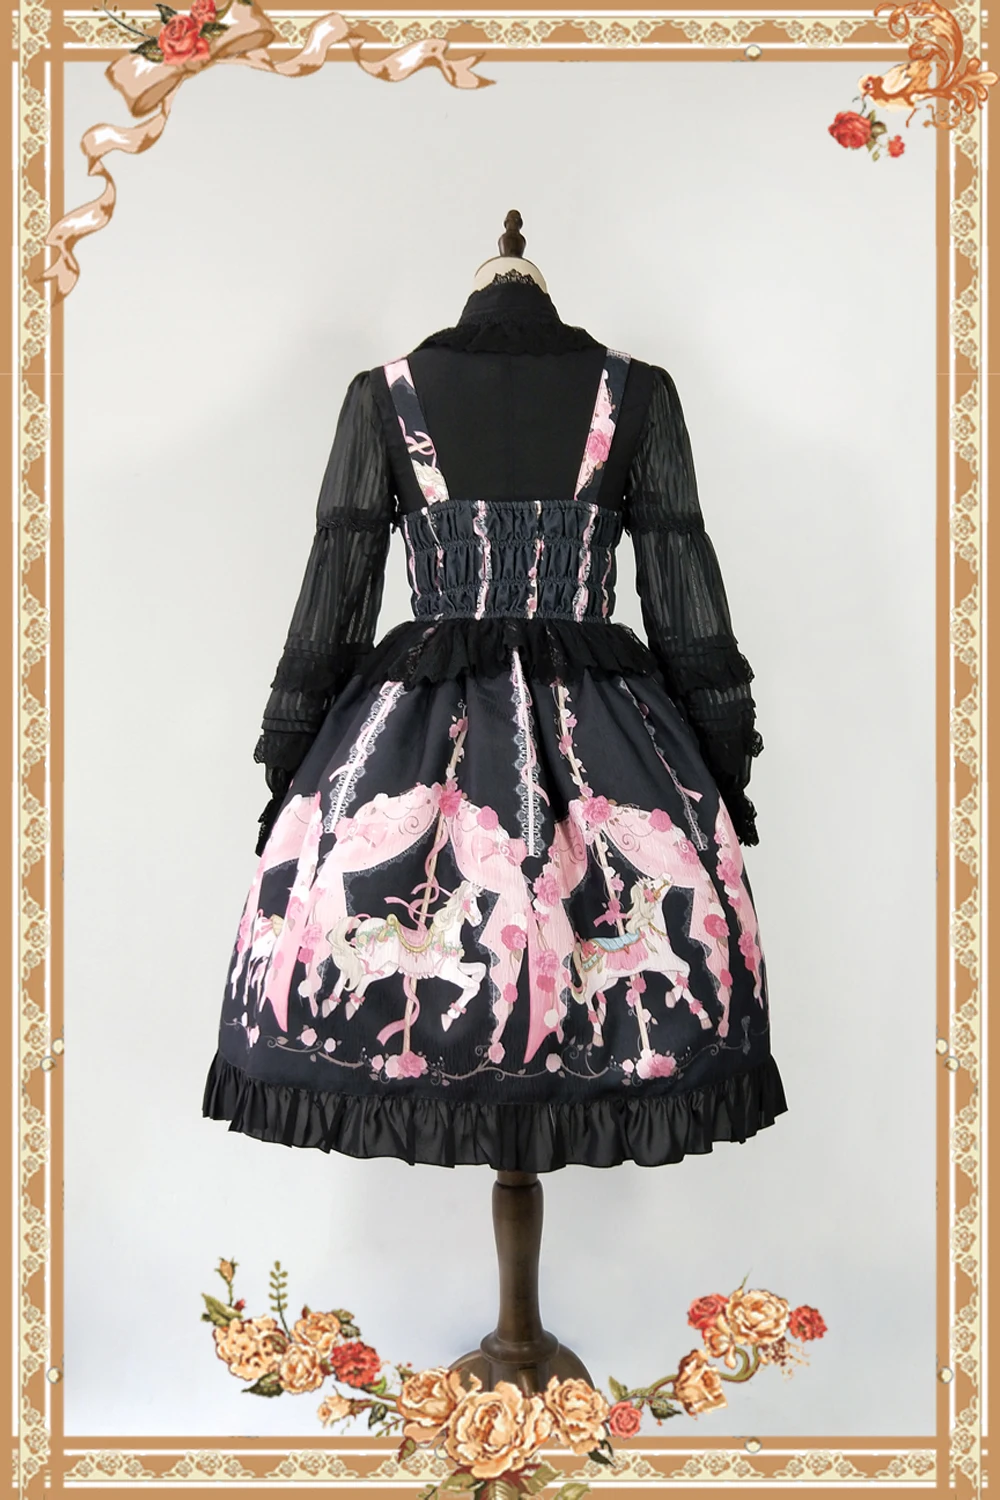 Повседневное платье в стиле Лолита с принтом карусели для бега от Infanta